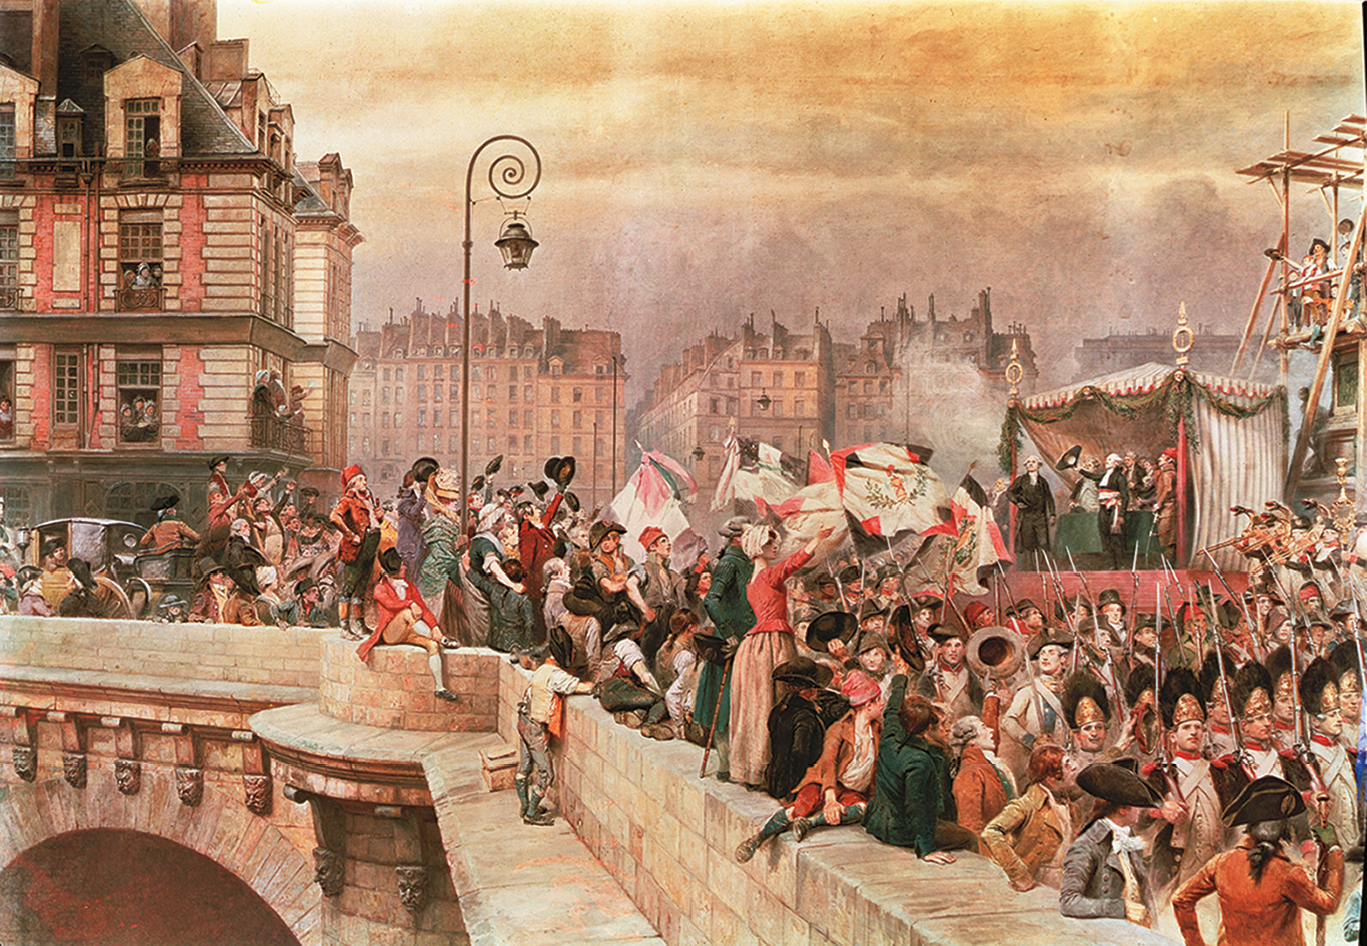 Pintura. À esquerda, pessoas em uma ponte, segurando bandeiras e observando homens fardados marchando. À direita, um palanque com pessoas em cima. Ao fundo, construções.